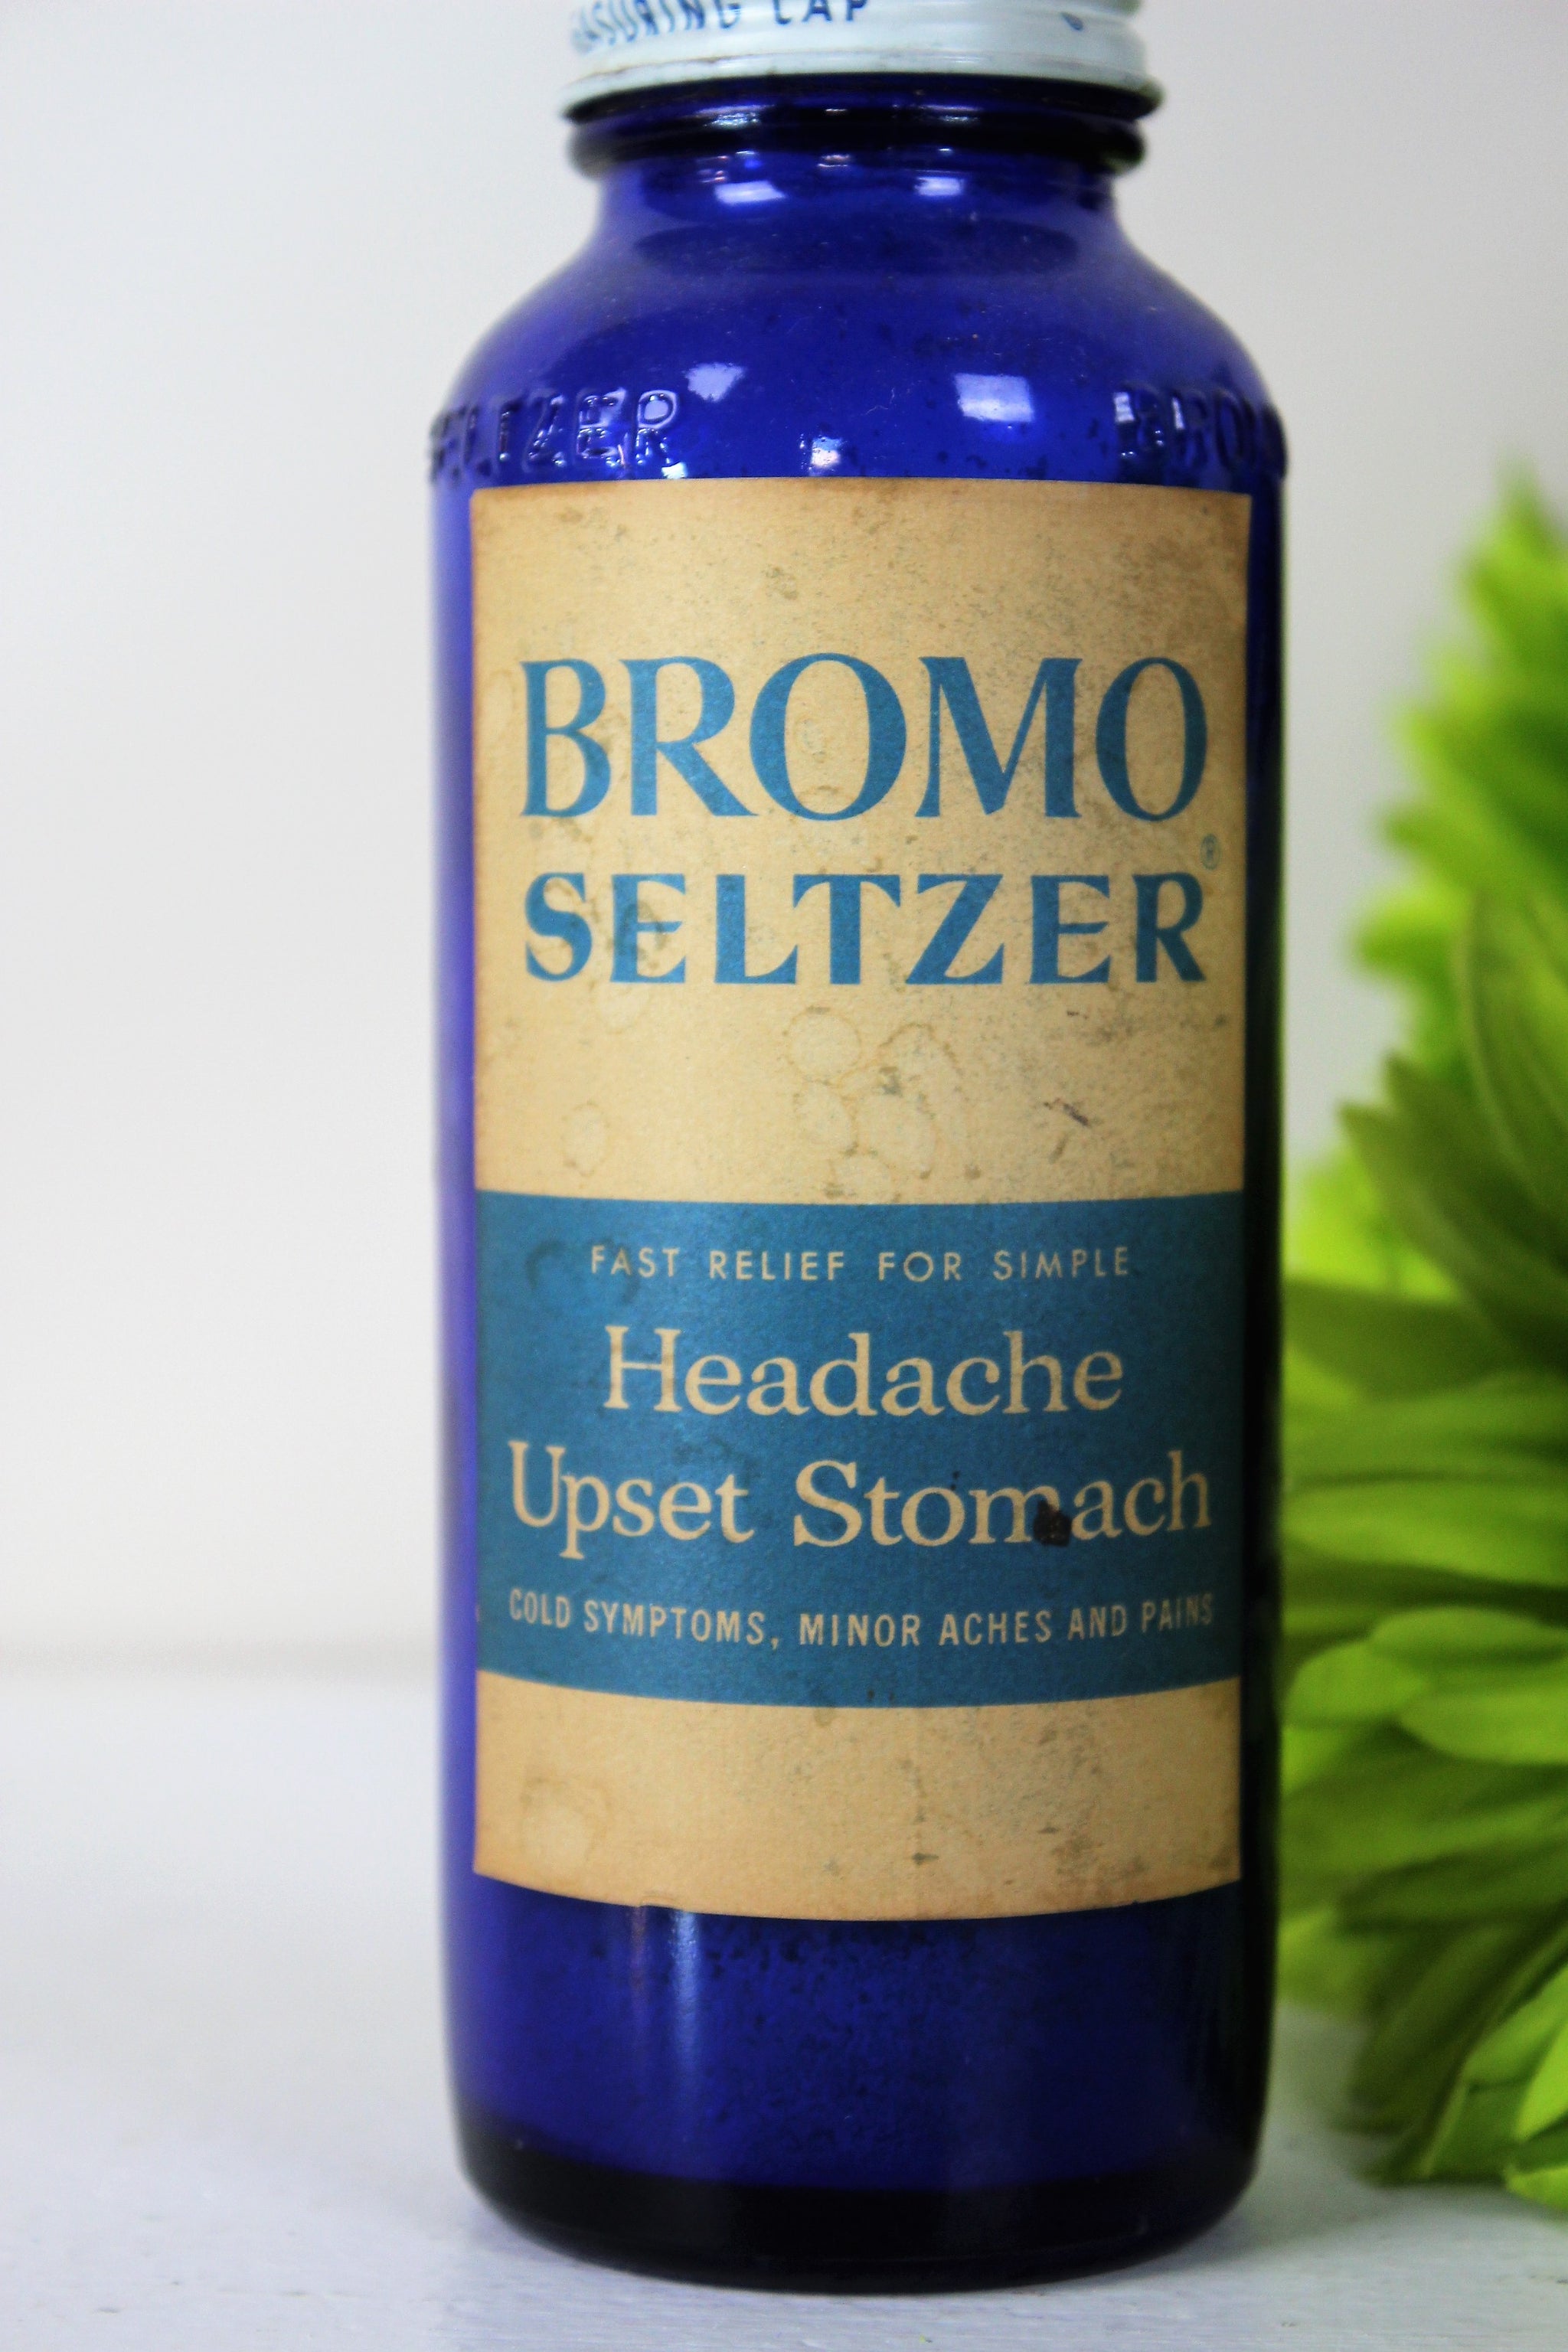 Vintage Cobalt Blue Glass Bottle of Bromo Seltzer  With 